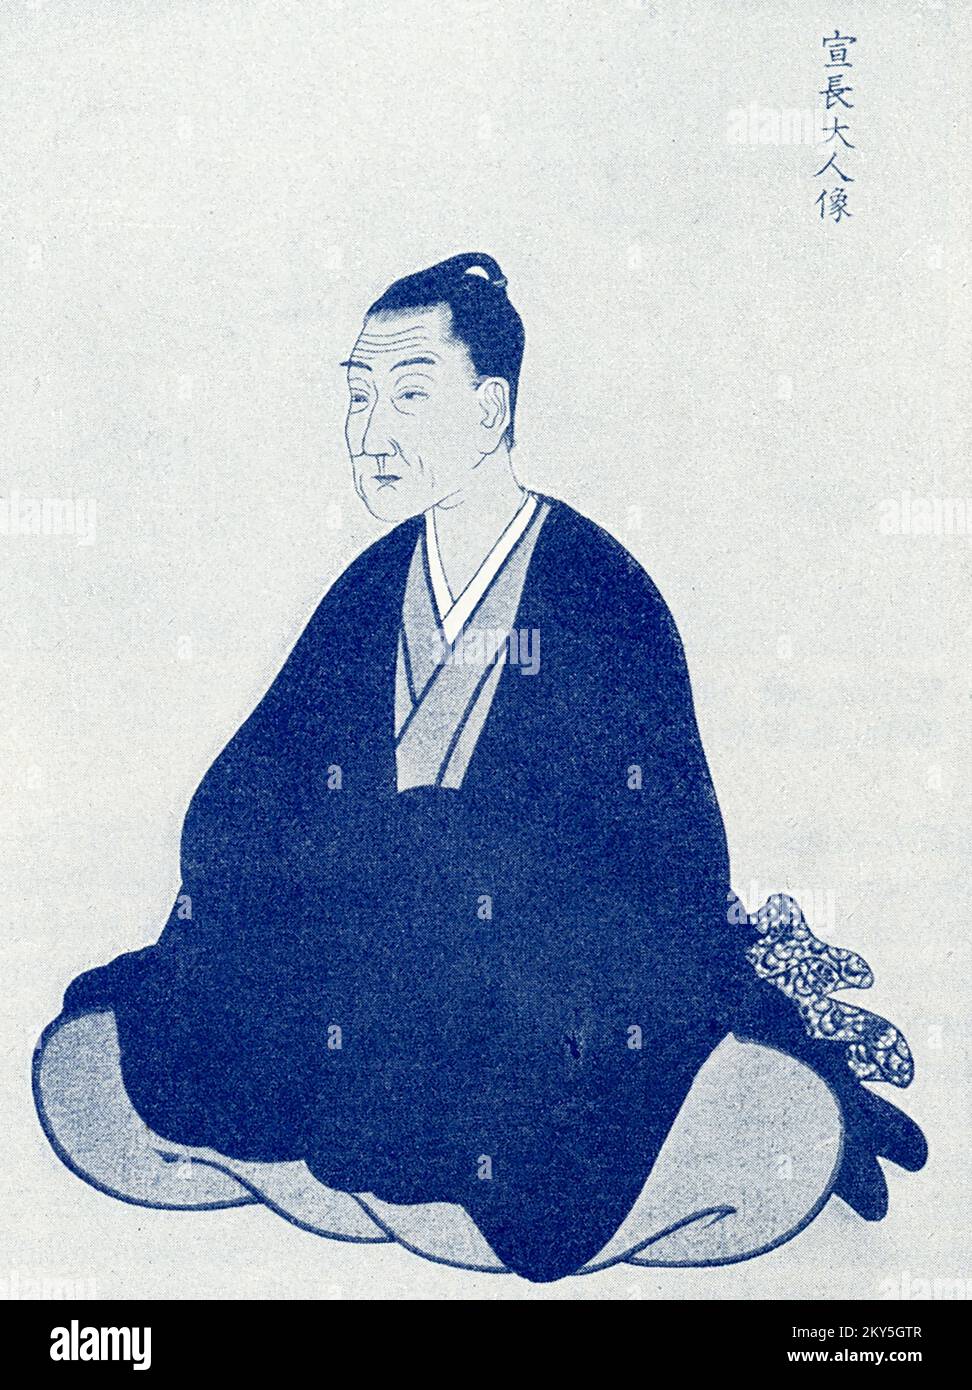 Esta imagen muestra: “Norinaga Motoori. De un retrato guardado por un miembro de la familia”. Motoori Norinaga (1730 – 1801) fue un erudito en clásicos japoneses, filósofo y poeta durante la época del Shogunato Tokugawa. Foto de stock